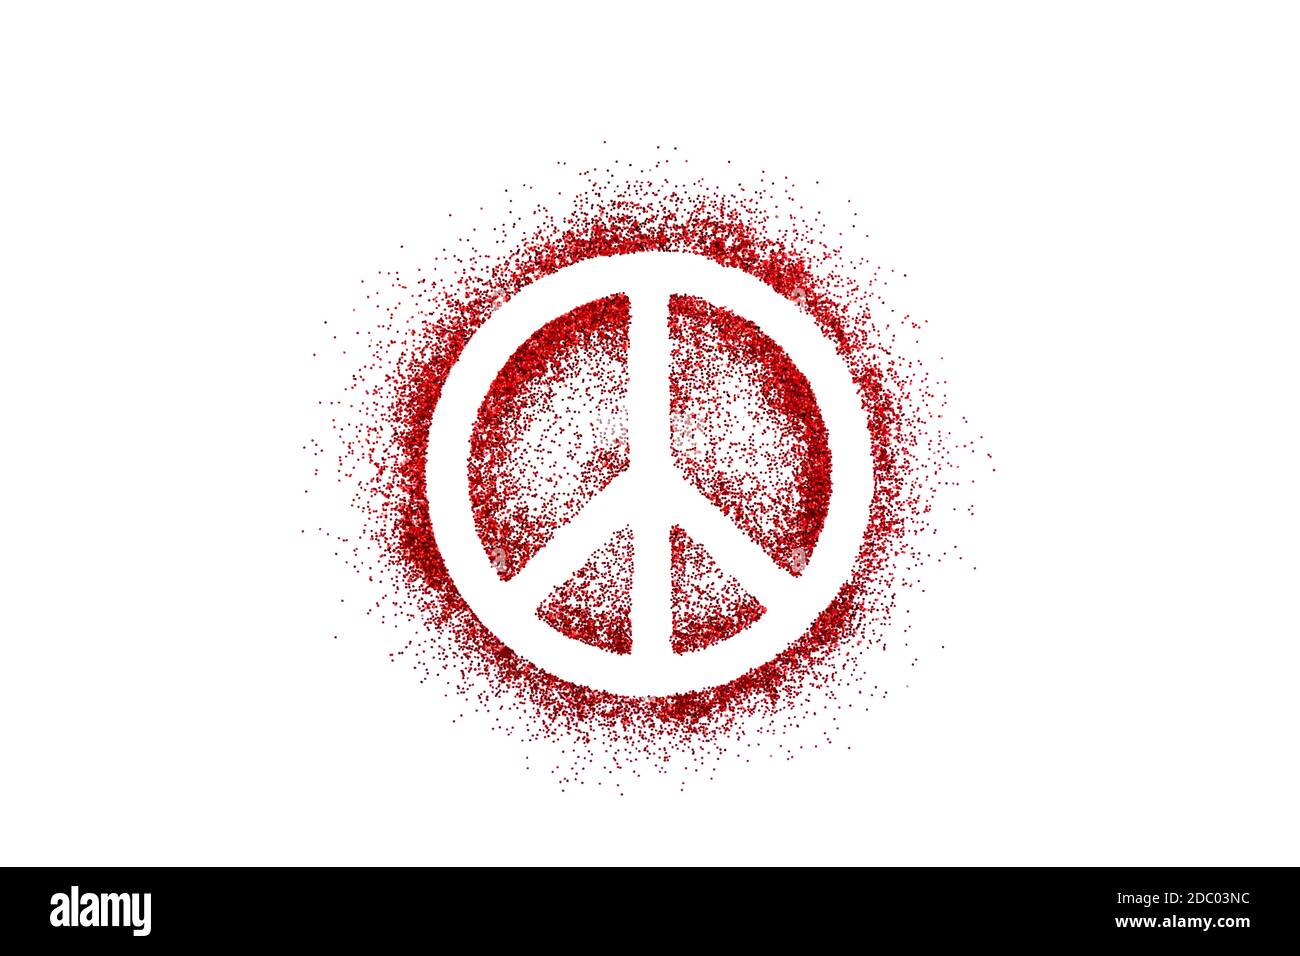 Simbolo di pace su glitter rosso isolato su sfondo bianco Foto Stock